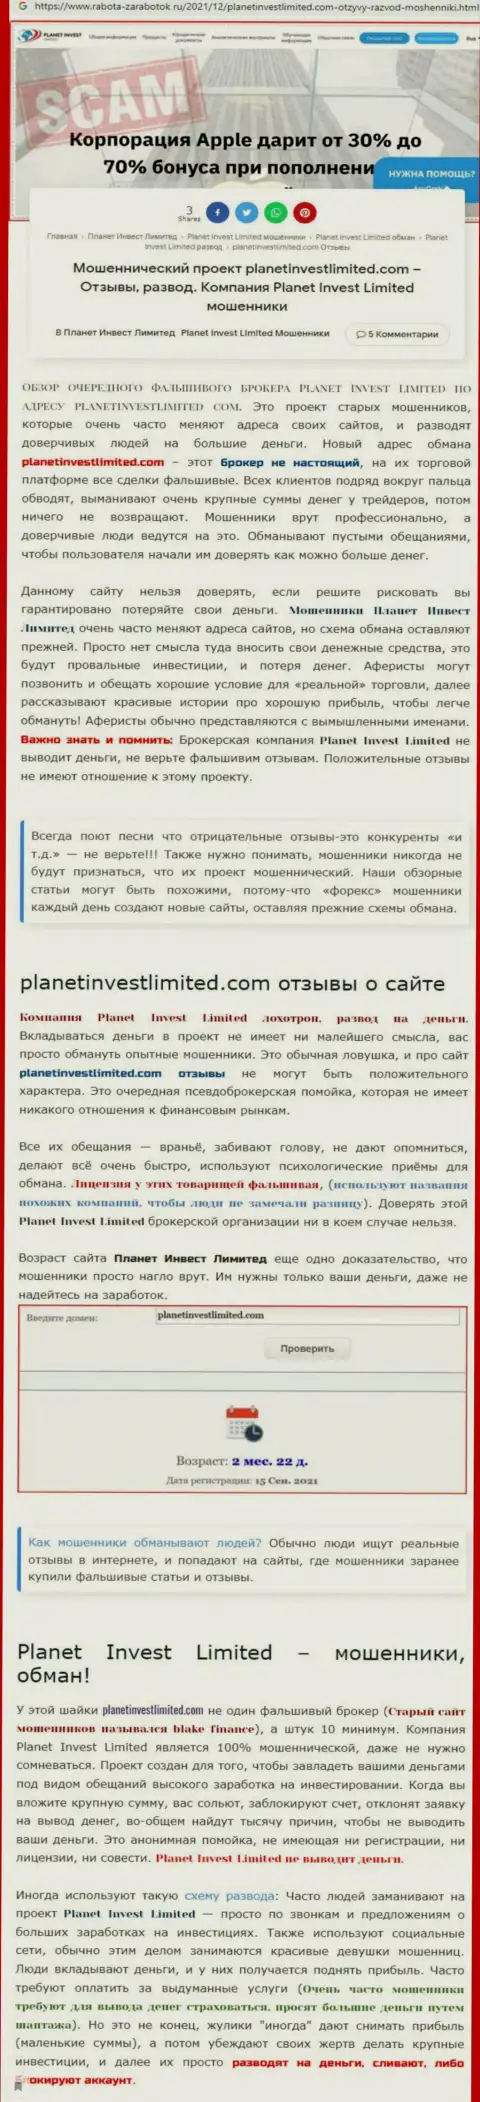 Стоит ли сотрудничать с организацией PlanetInvest Limited ??? (Обзор противозаконных действий организации)